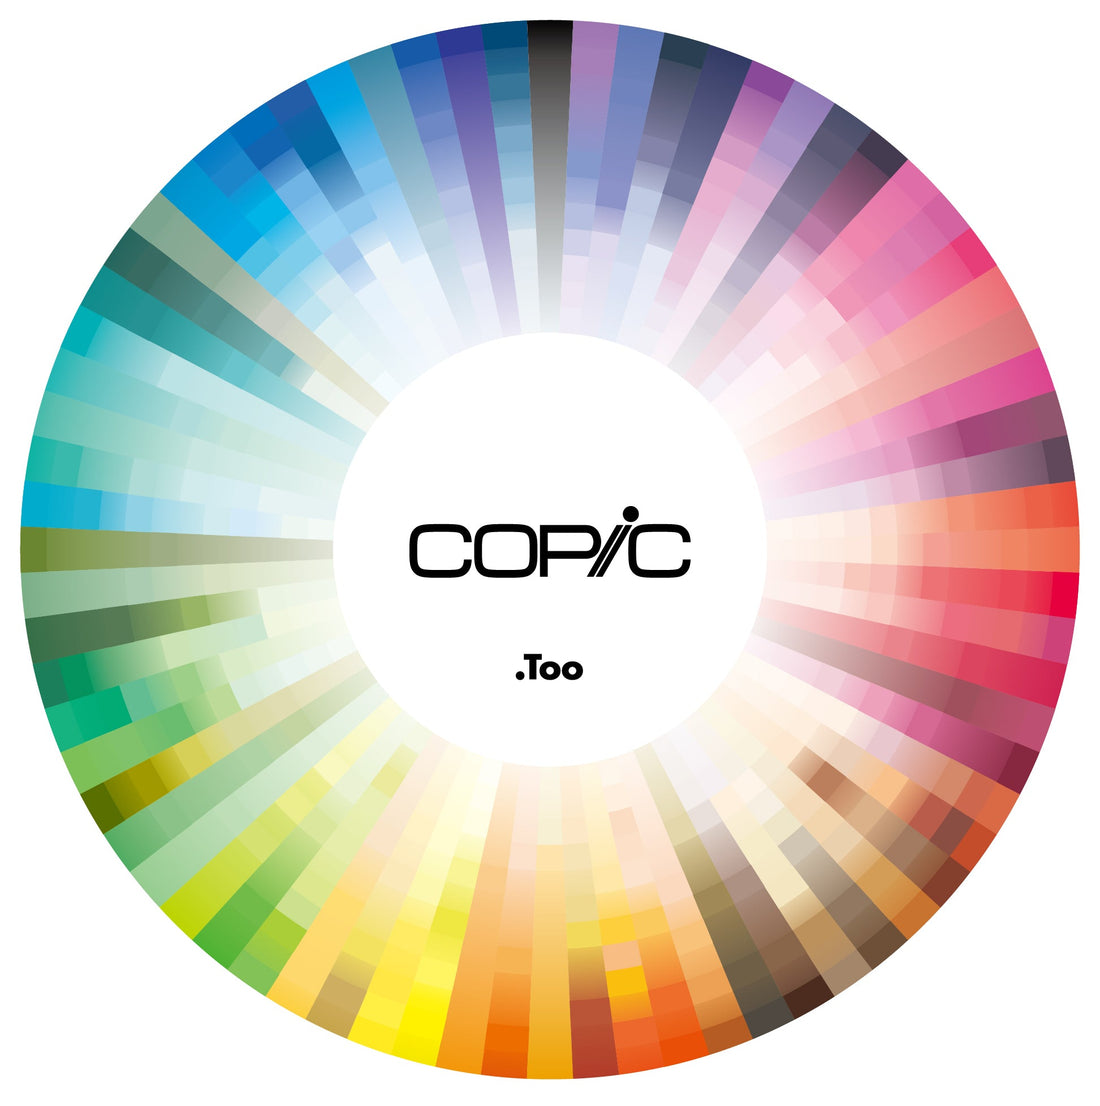 la ruota dei colori Copic con i suoi 358 colori